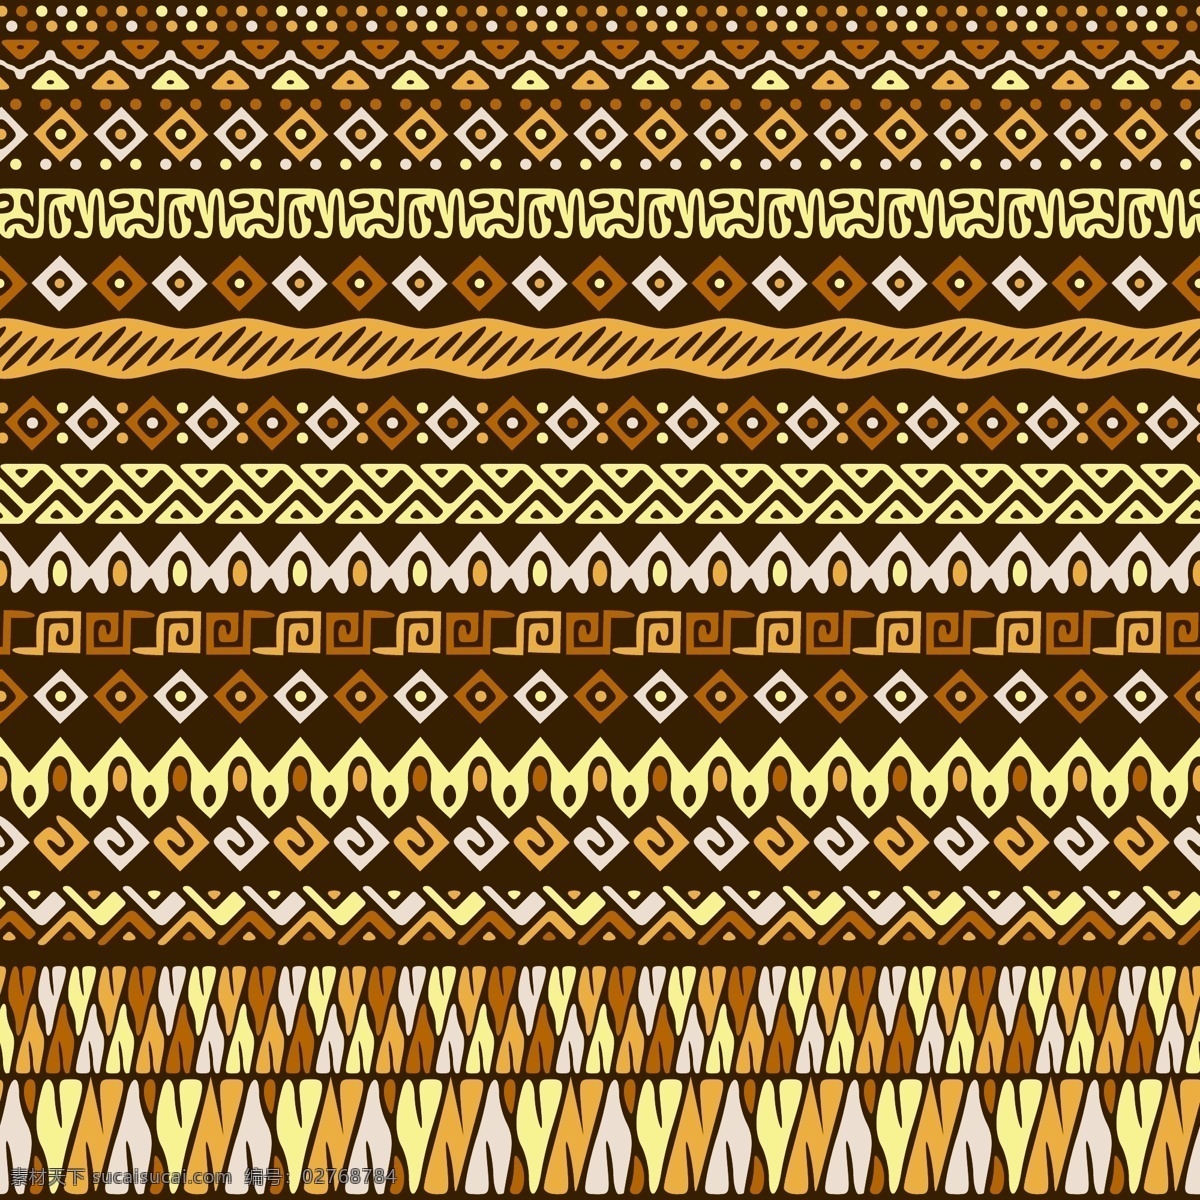 几何 形态 中 民族 模式 背景 抽象 装饰 手绘 饰品 印度 部落 非洲 观赏 无缝 古董 纺织品 传统 嬉皮士 阿兹特克